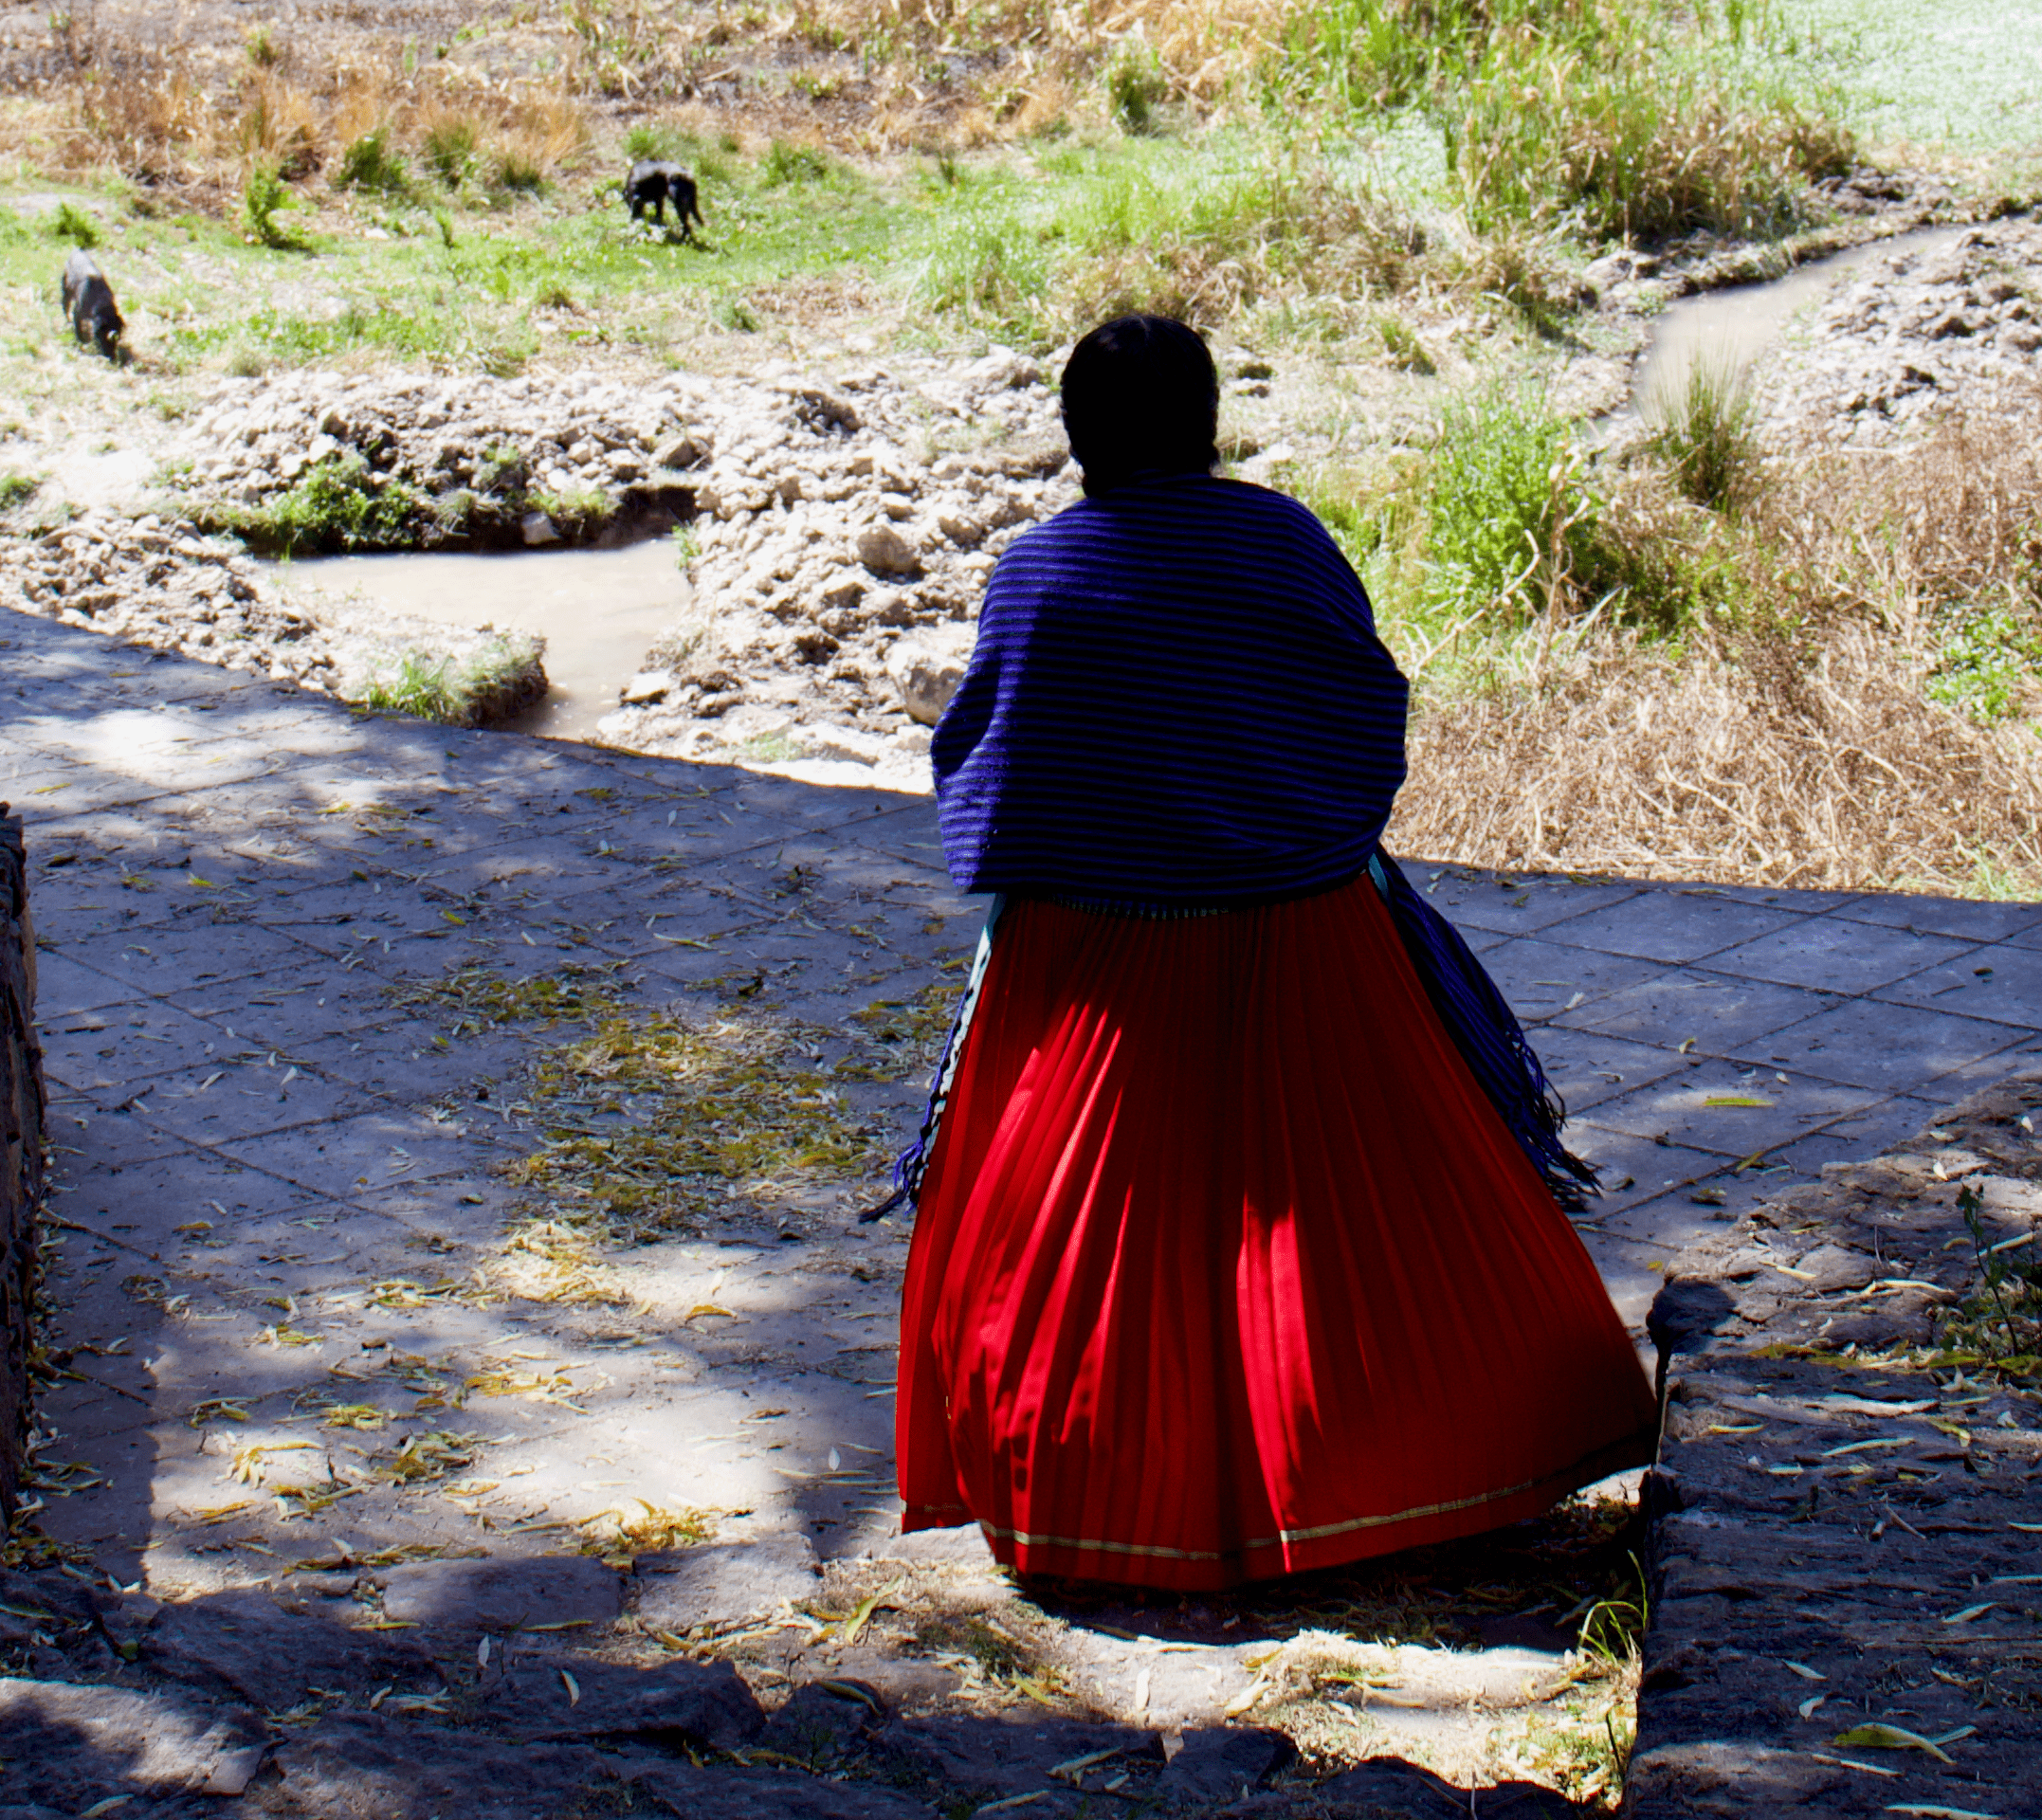 Conoce el Podcast “Contar el lago en un día: Narrativas del universo femenino de la región lacustre de Pátzcuaro” de Gabriela Mier Martínez